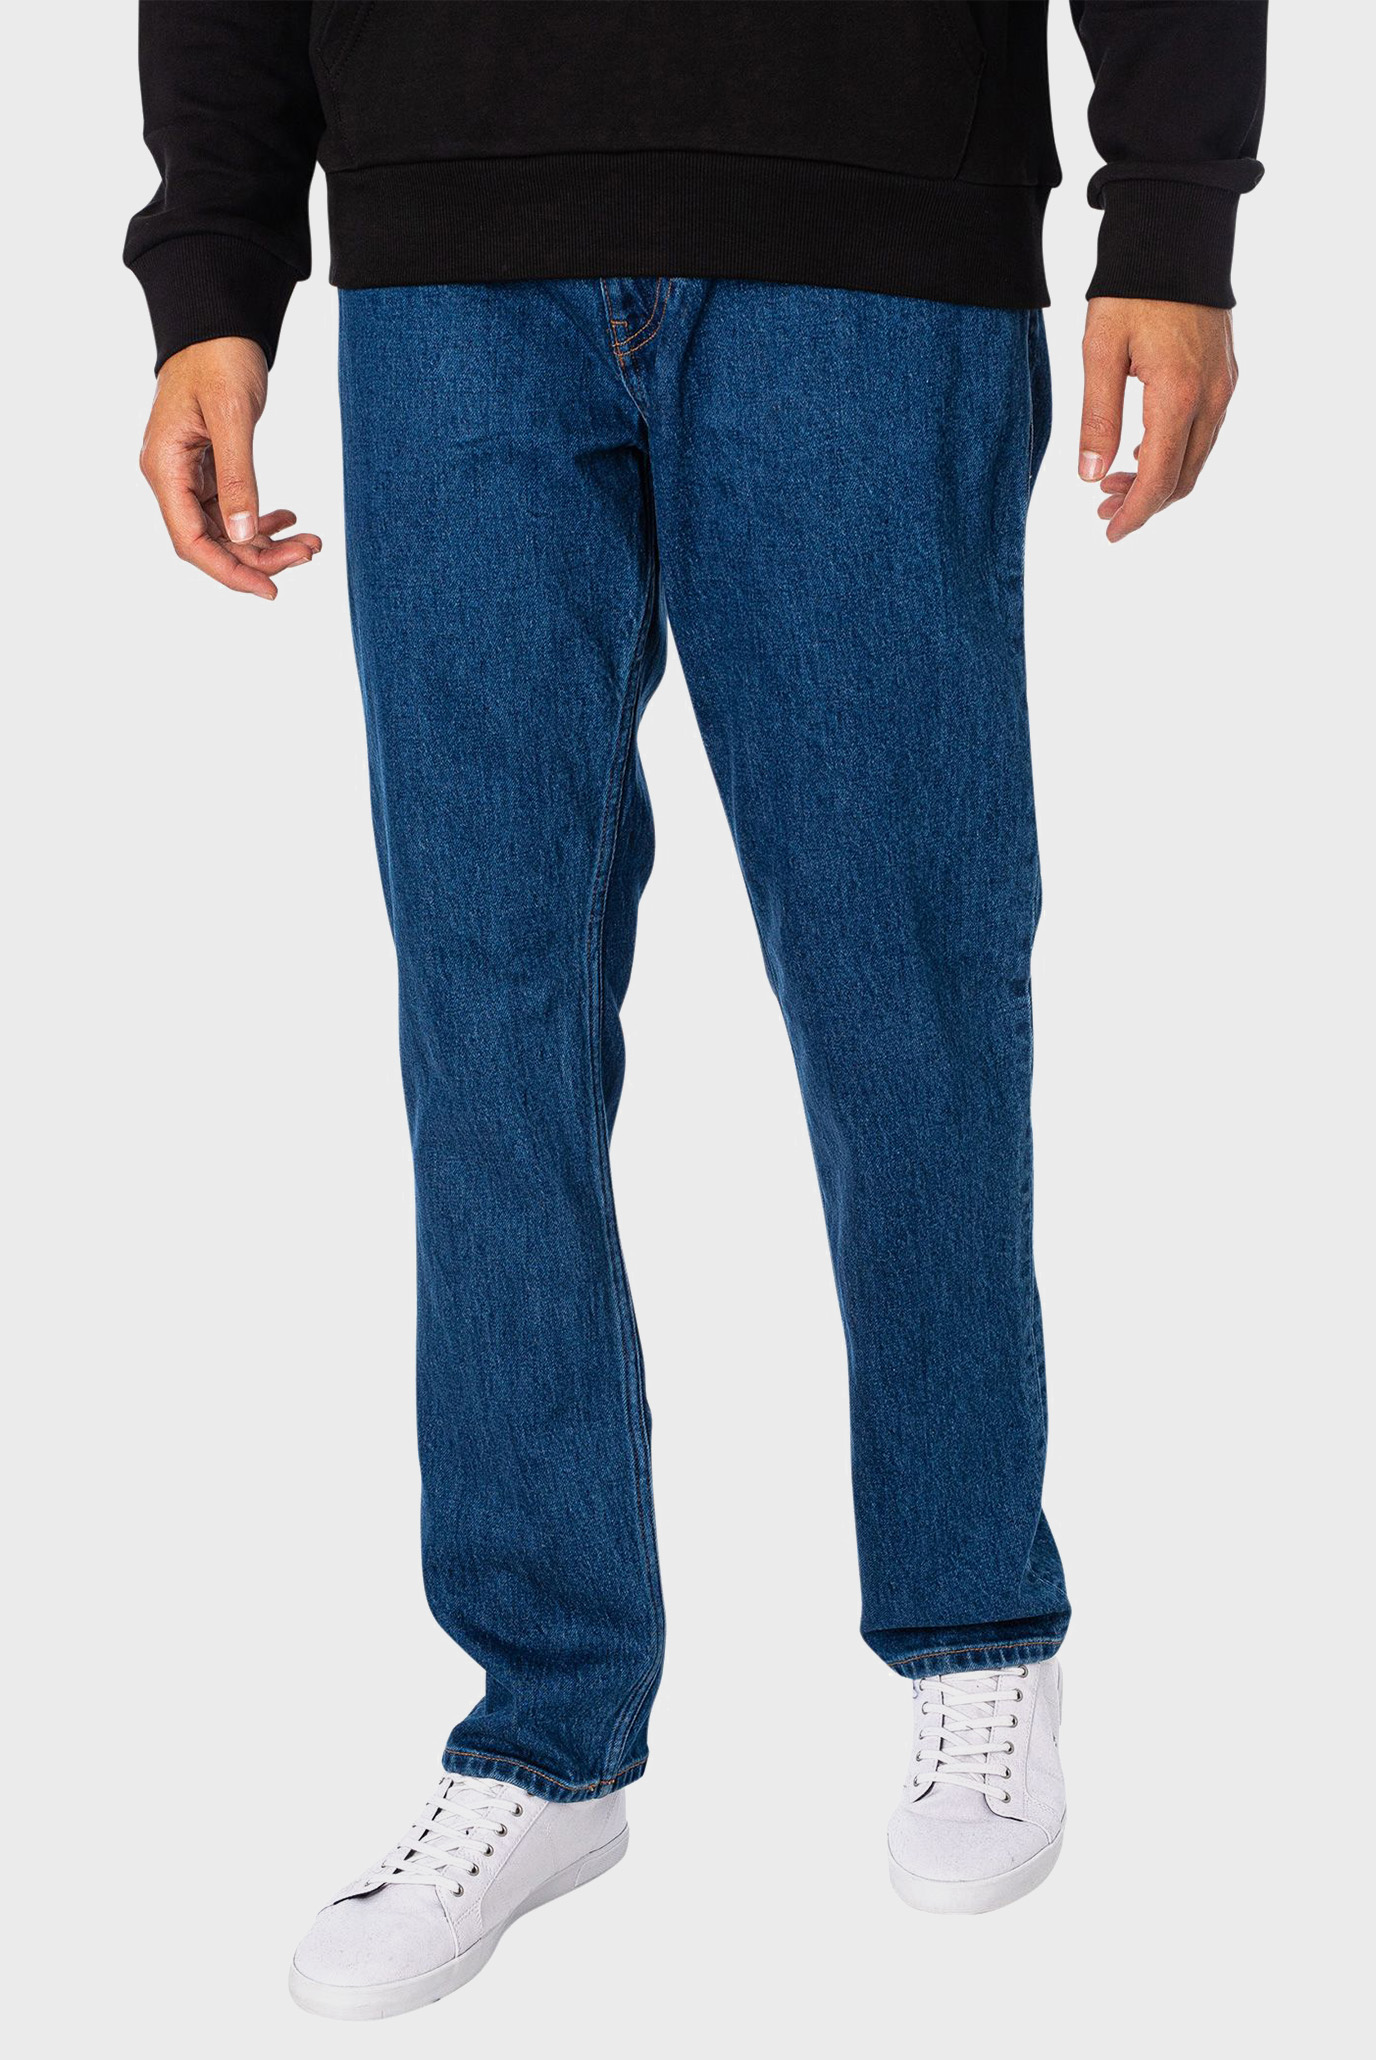 Мужские синие джинсы RYAN RGLR STRGHT CG4158 1